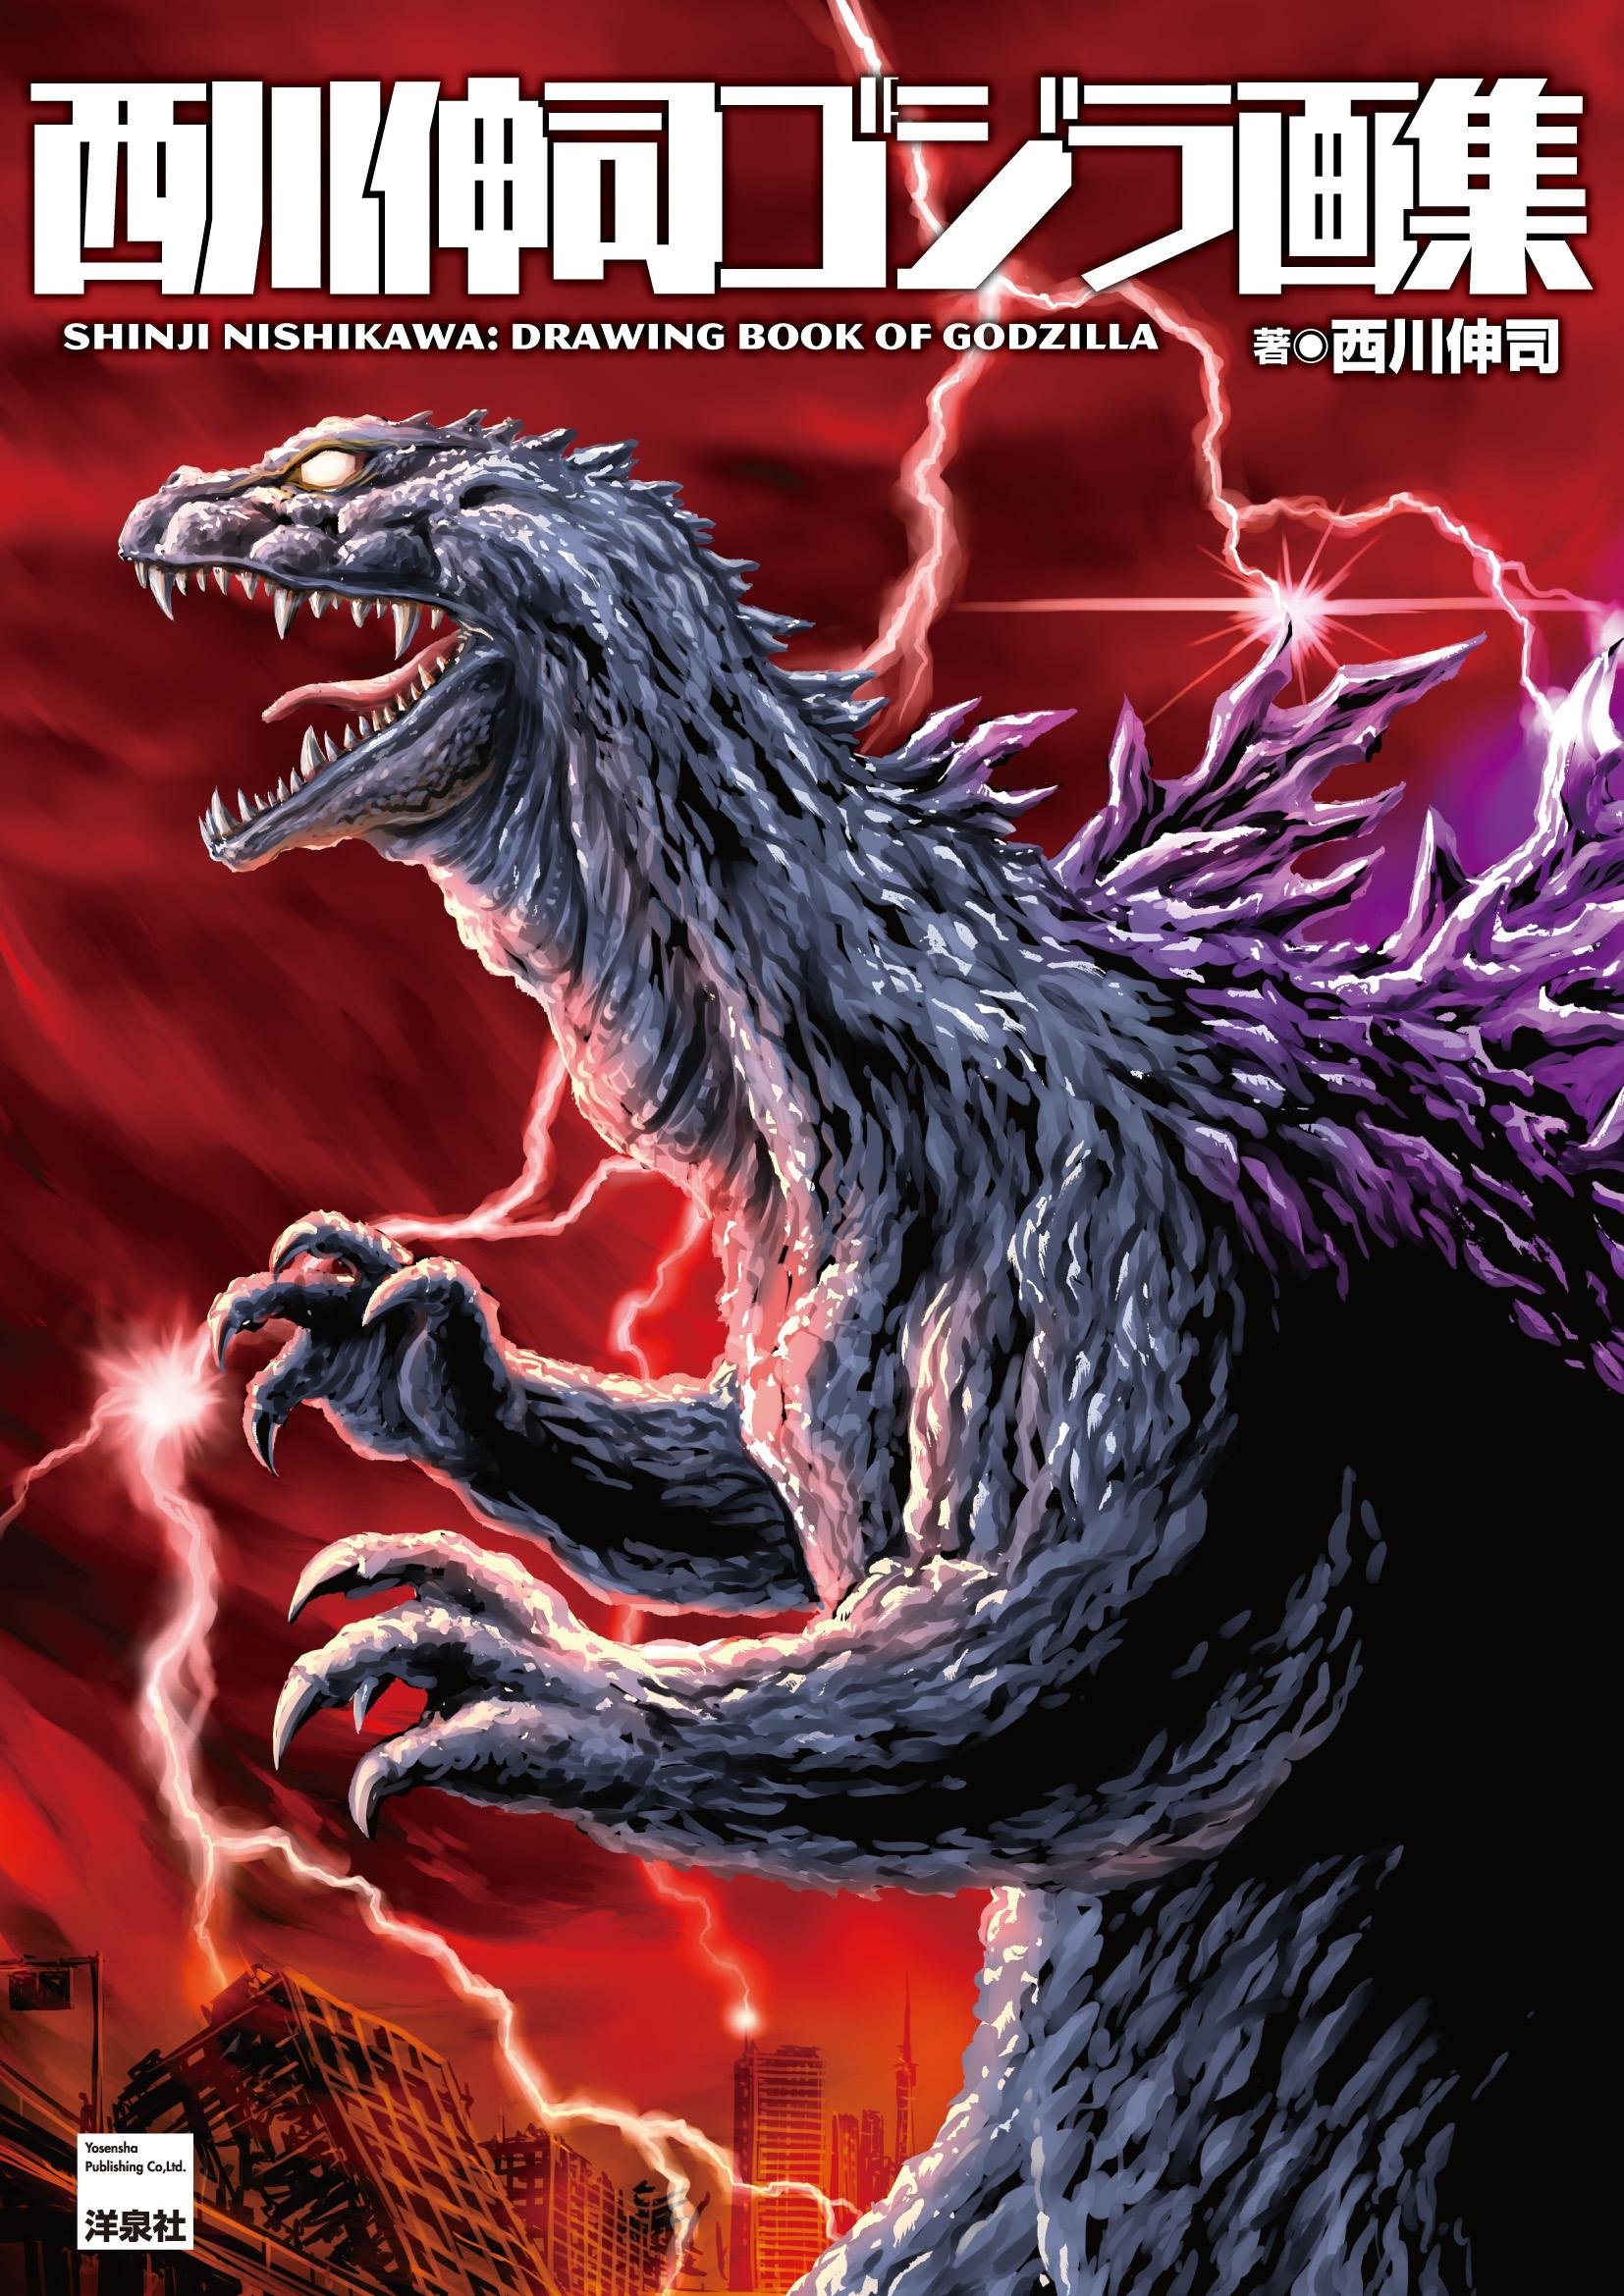 Shinji Nishikawa: Drawing Book of Godzilla | Wikizilla, the kaiju